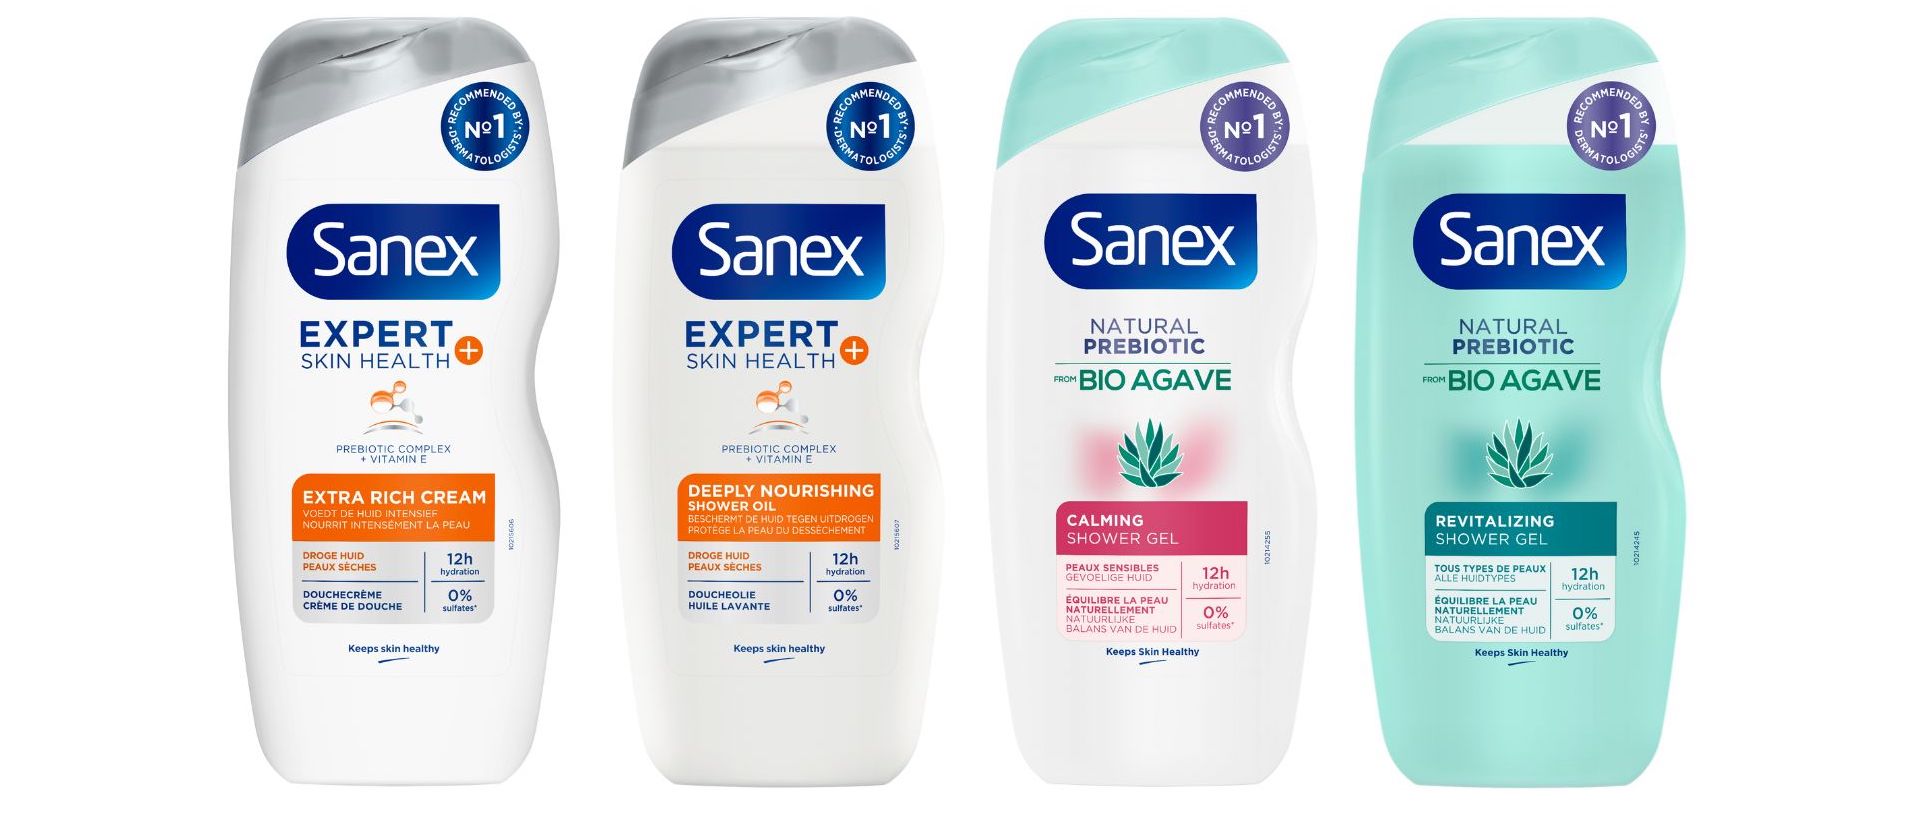 Sanex - Expert Skin Health - Bio Agave - packshots 4x